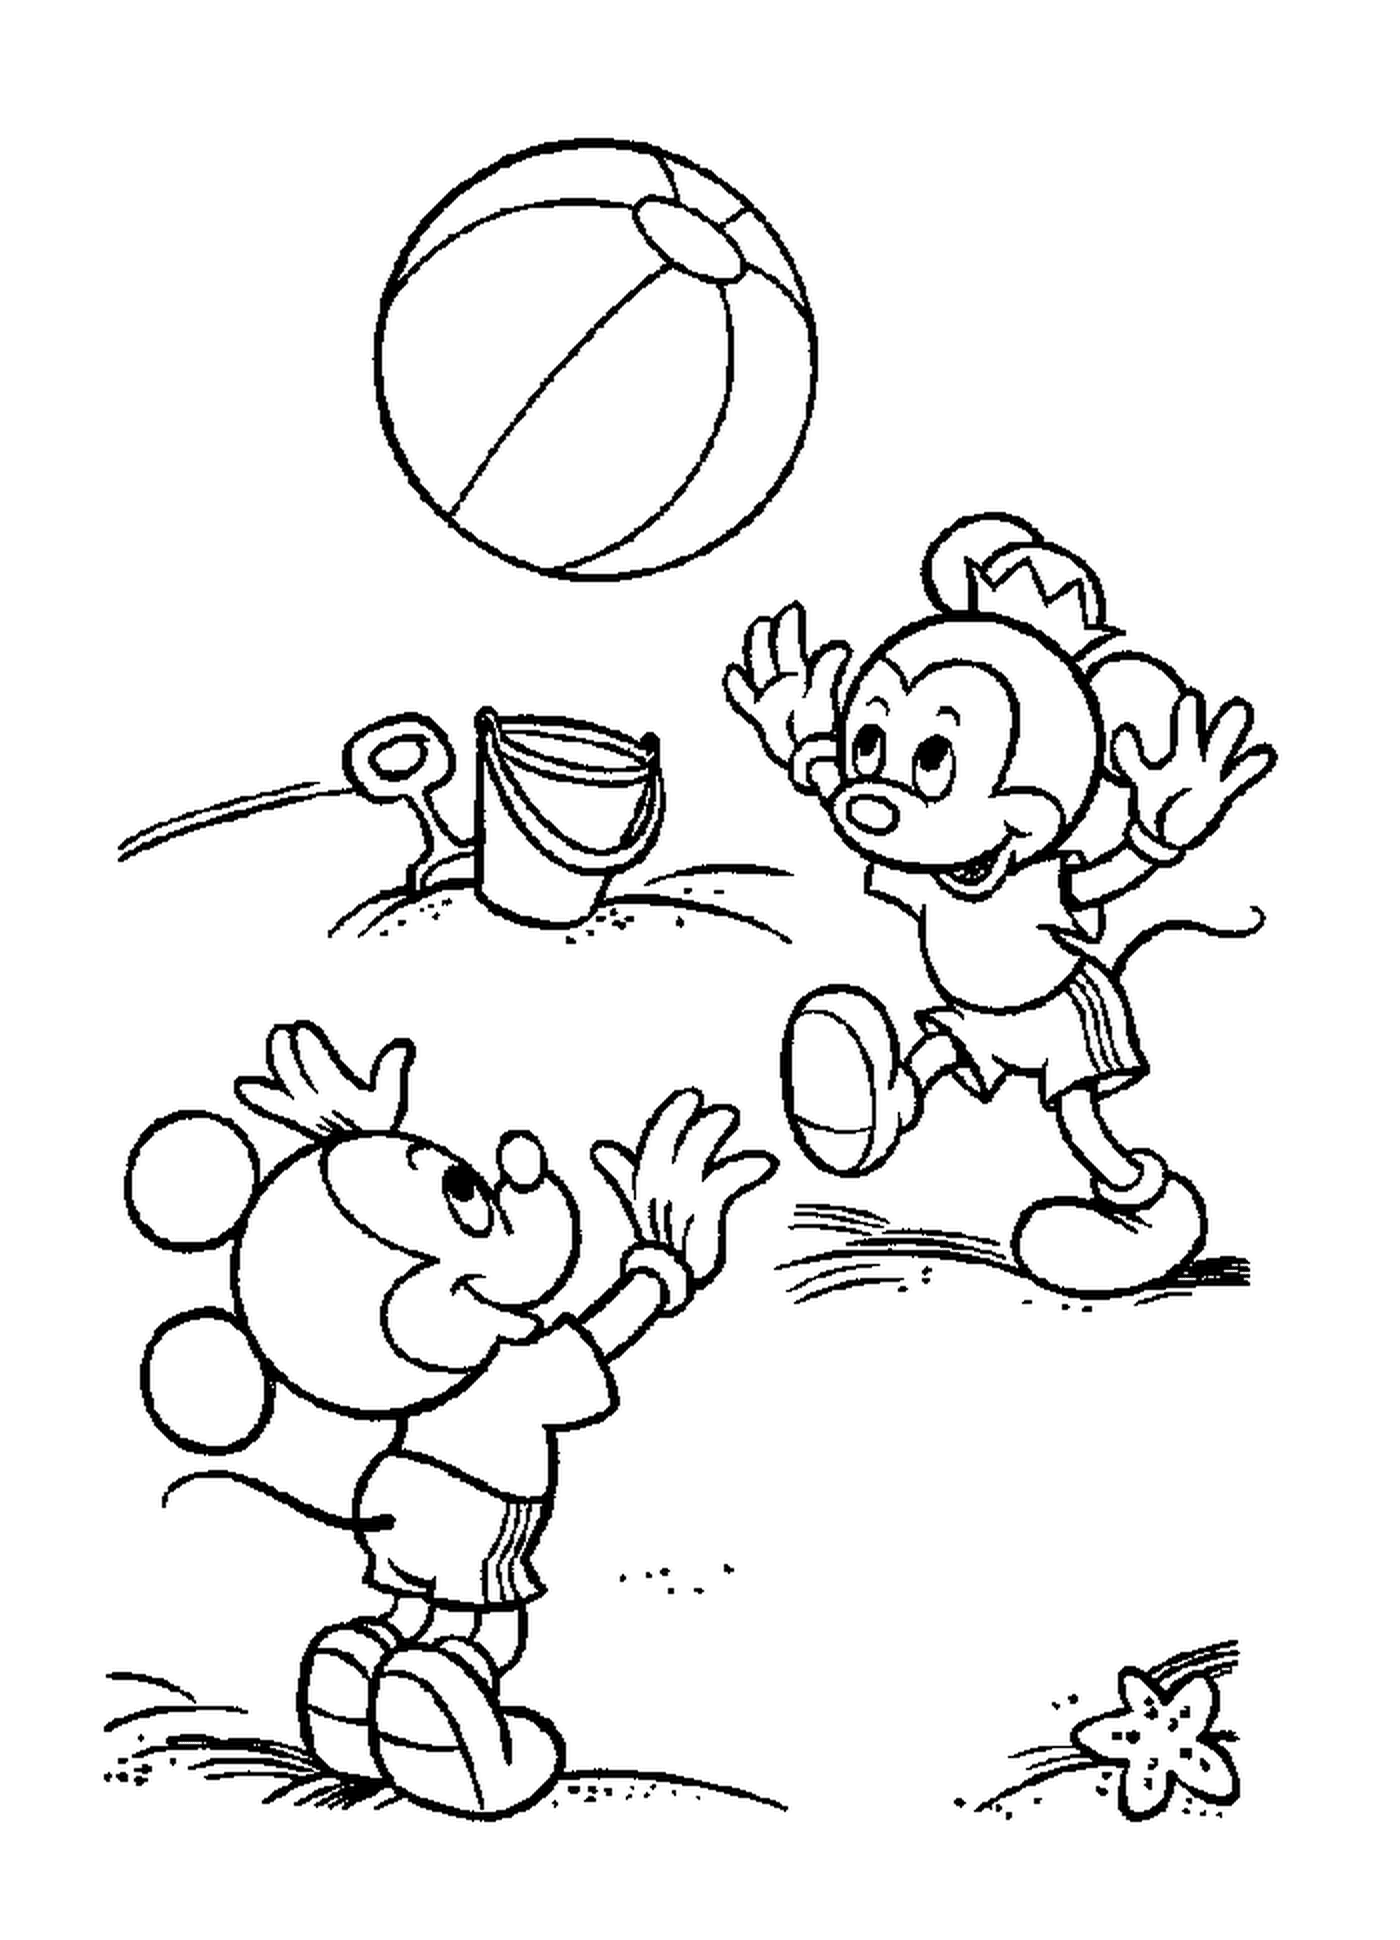  Los hijos de Mickey en la playa: Mickey Mouse jugando a la pelota 